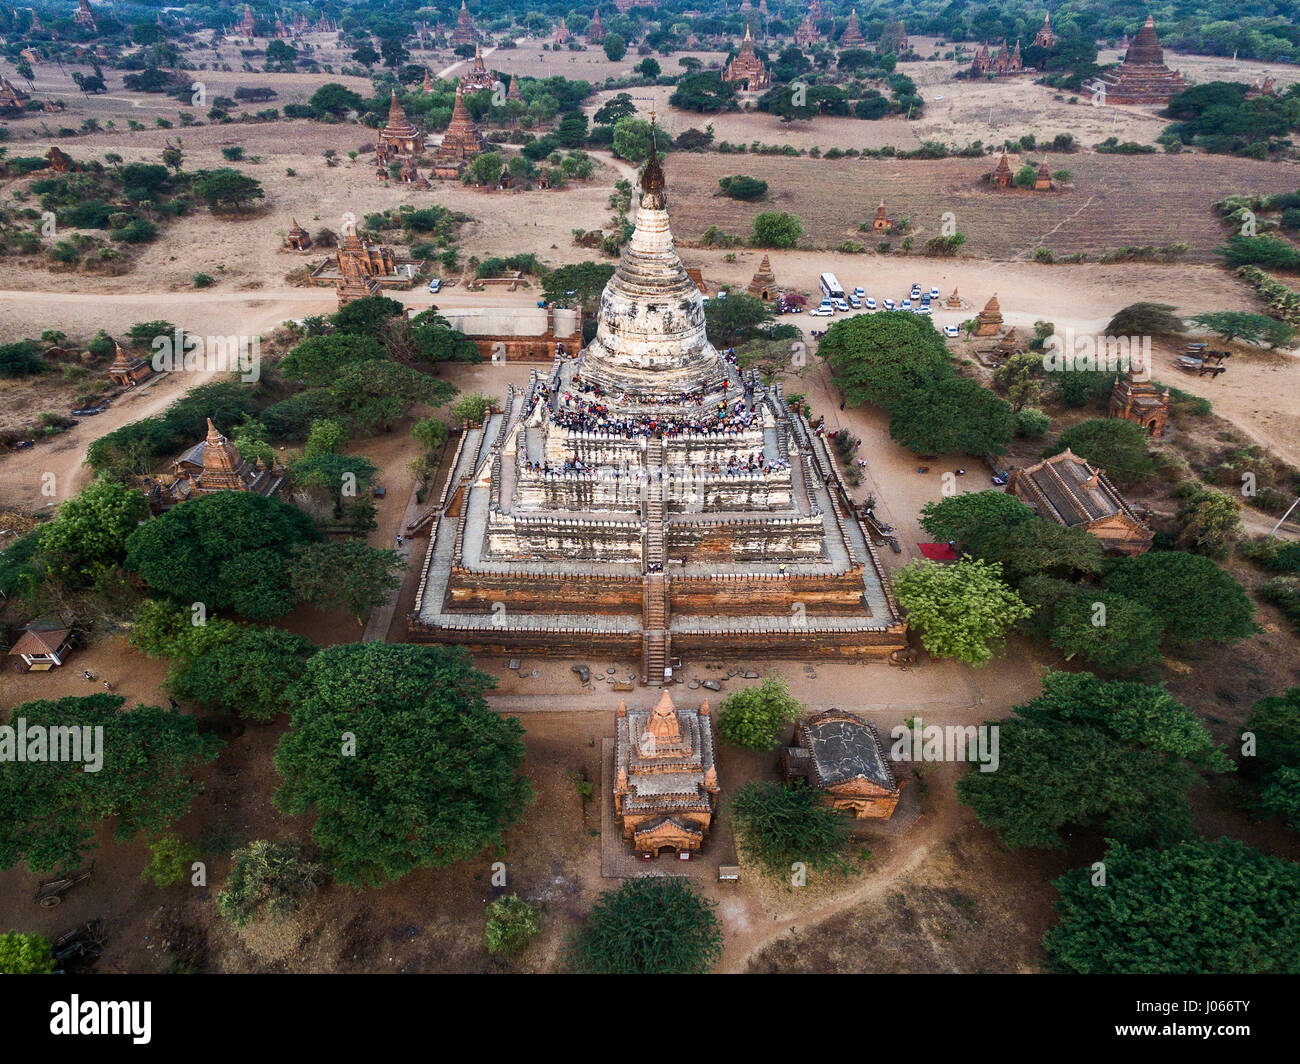 BAGAN, Myanmar: la Pagoda Shwesandaw contiene una serie de cinco terrazas, coronada con una stupa cilíndrico, el cual tiene un paraguas bejewelled. La pagoda fue construida por el rey Anawrahta en 1057. Increíble antena drone fotografías de trescientos veinte pies en el aire, han sido capturados por un fotógrafo amateur. Imágenes y vídeo muestra los antiguos templos alrededor de Birmania, ahora conocida como Myanmar, desde arriba. Exhibiendo su elegancia y su dominio sobre el paisaje. Ingeniero de India Pradeep Raja (28) de Tamilnadu, viajó a Bagan, Myanmar para disparar estos disparos vertiginoso, gastando un total de s Foto de stock